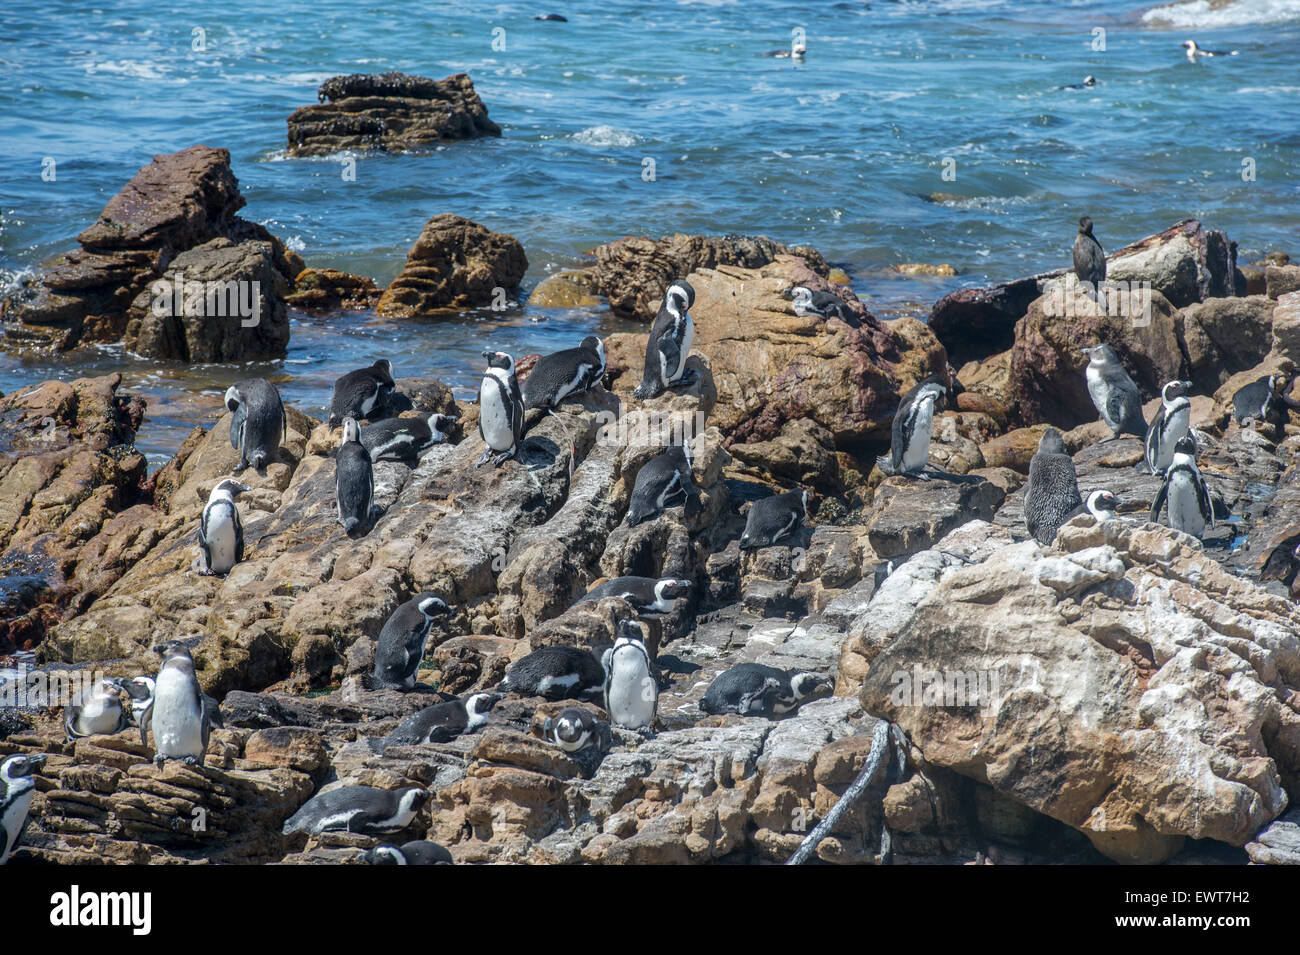 Betty's Bay, Afrique du Sud - pingouins africains (Spheniscidae) par l'eau Banque D'Images